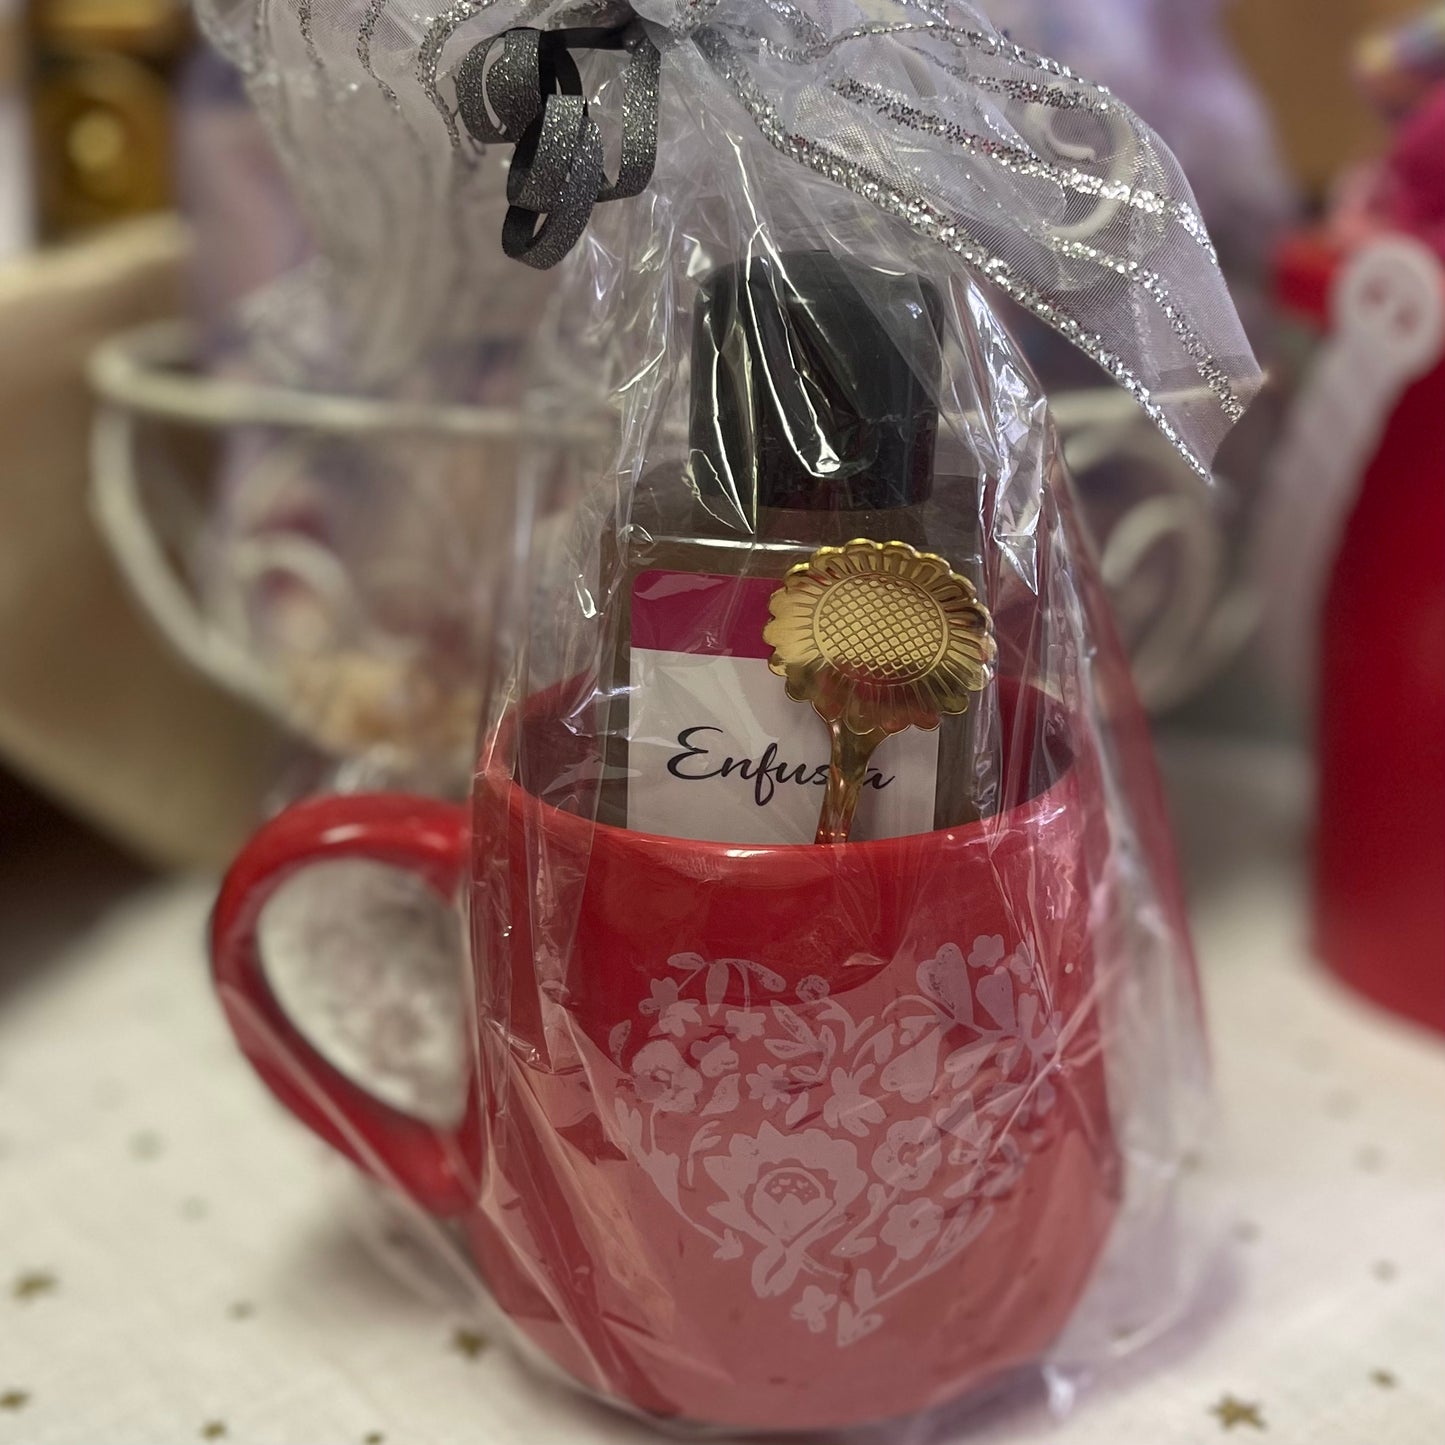 Ceramic Mug, Spoon, and Enfusa Bubble Bath Gift Set